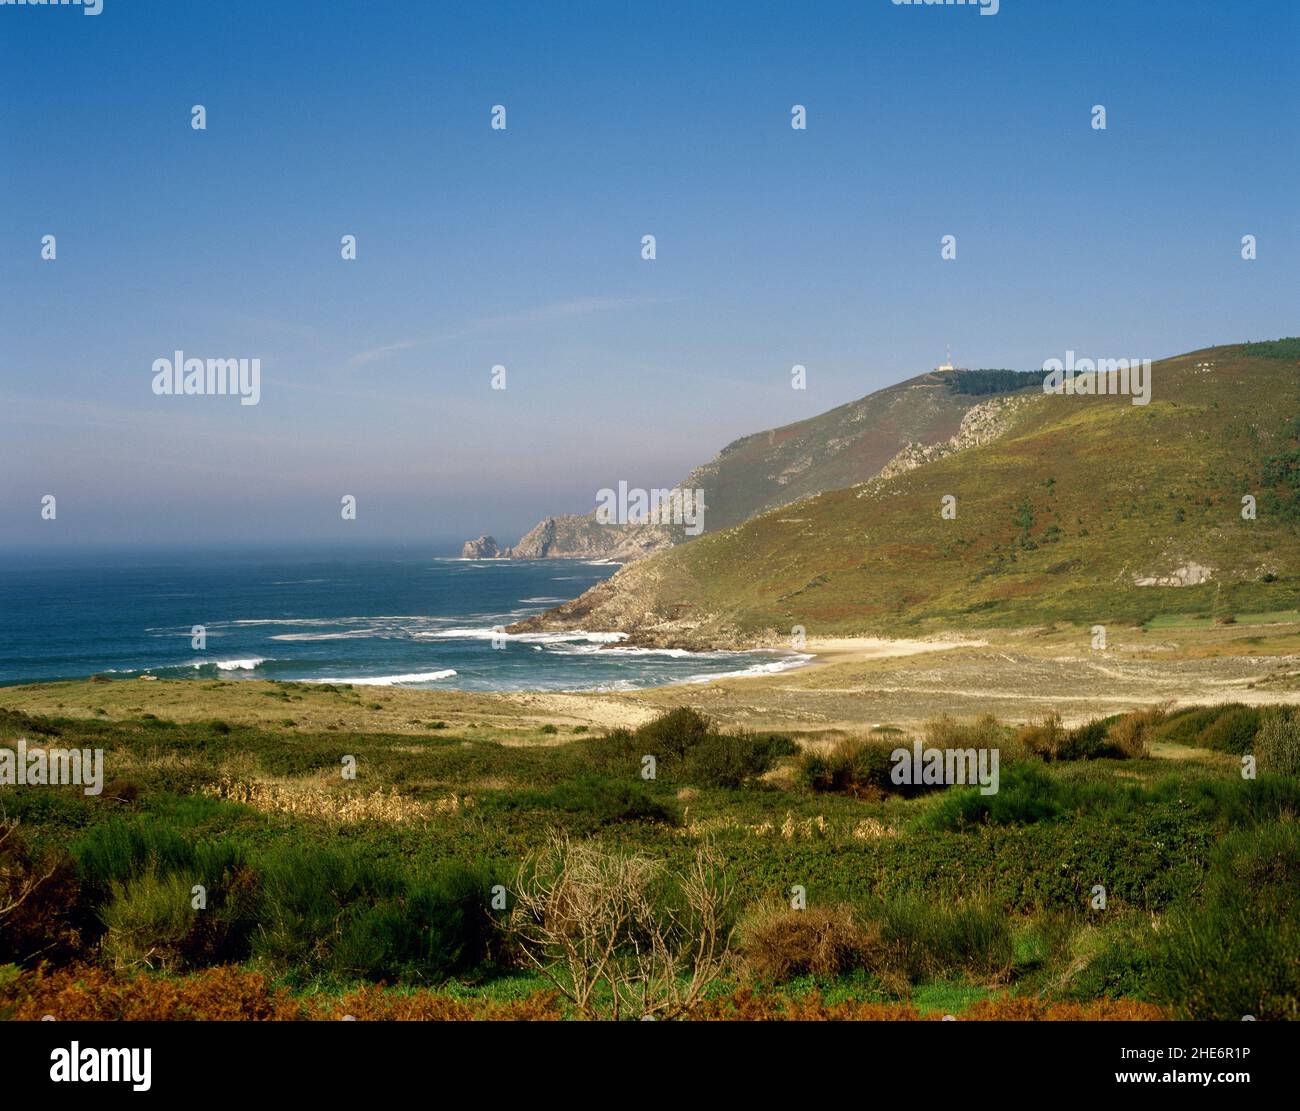 Spanien, Galicien, Provinz Coruña, Finisterre (Fisterra). Blick auf den Strand Mar de Fora und das Langhaus (Cabo da Nave) im Hintergrund. Stockfoto